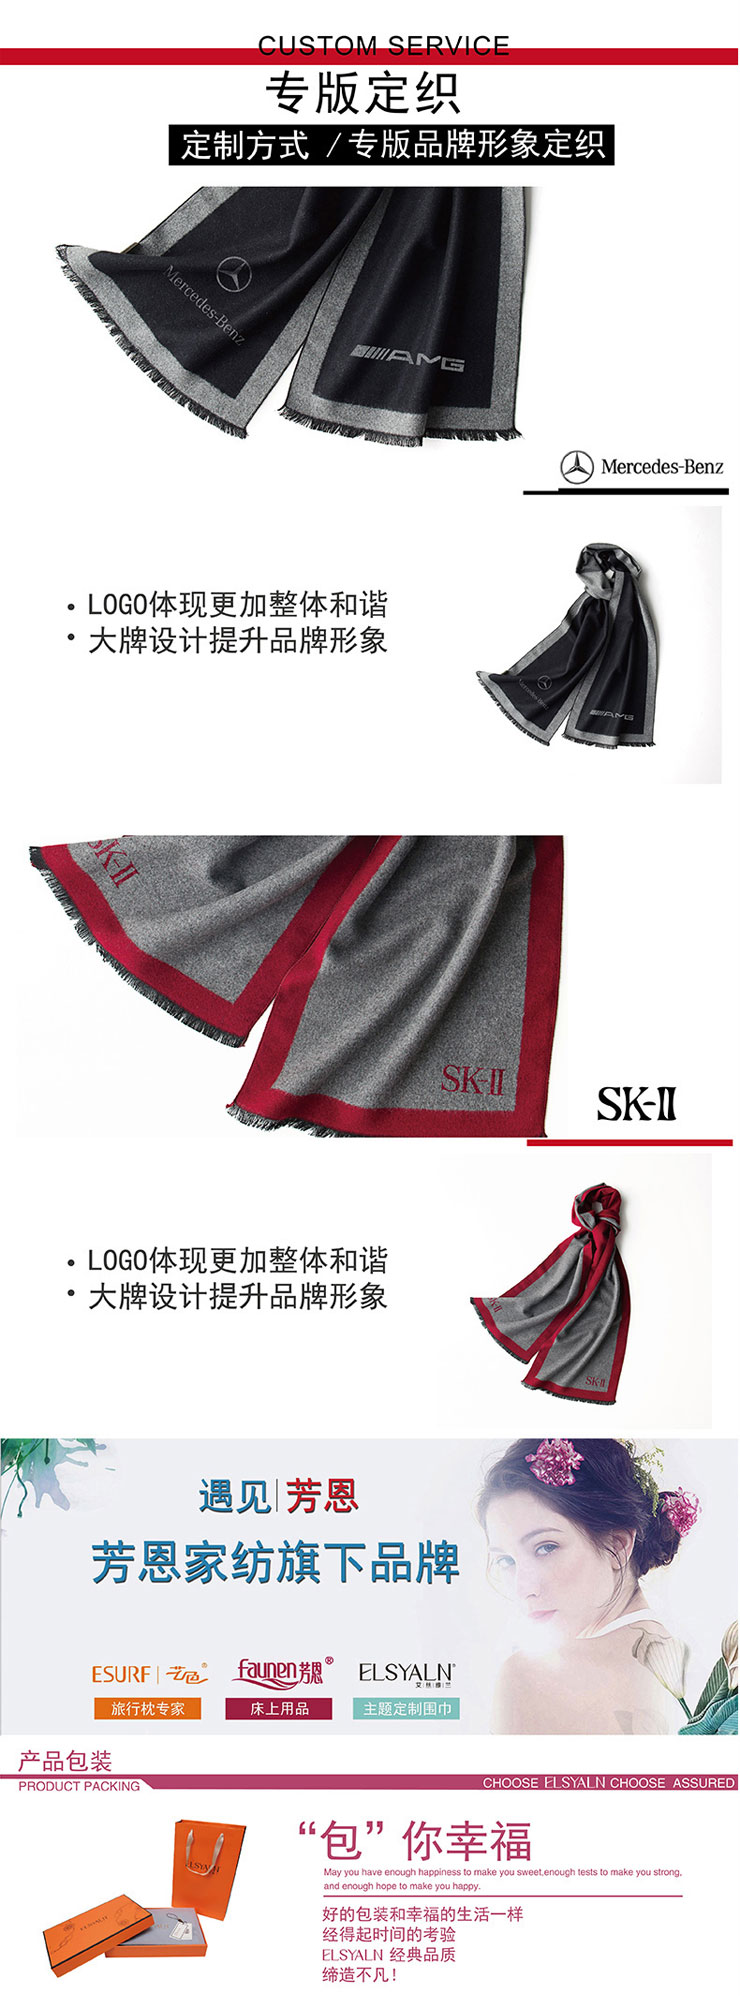 围巾品牌,男士围巾,桑蚕丝围巾